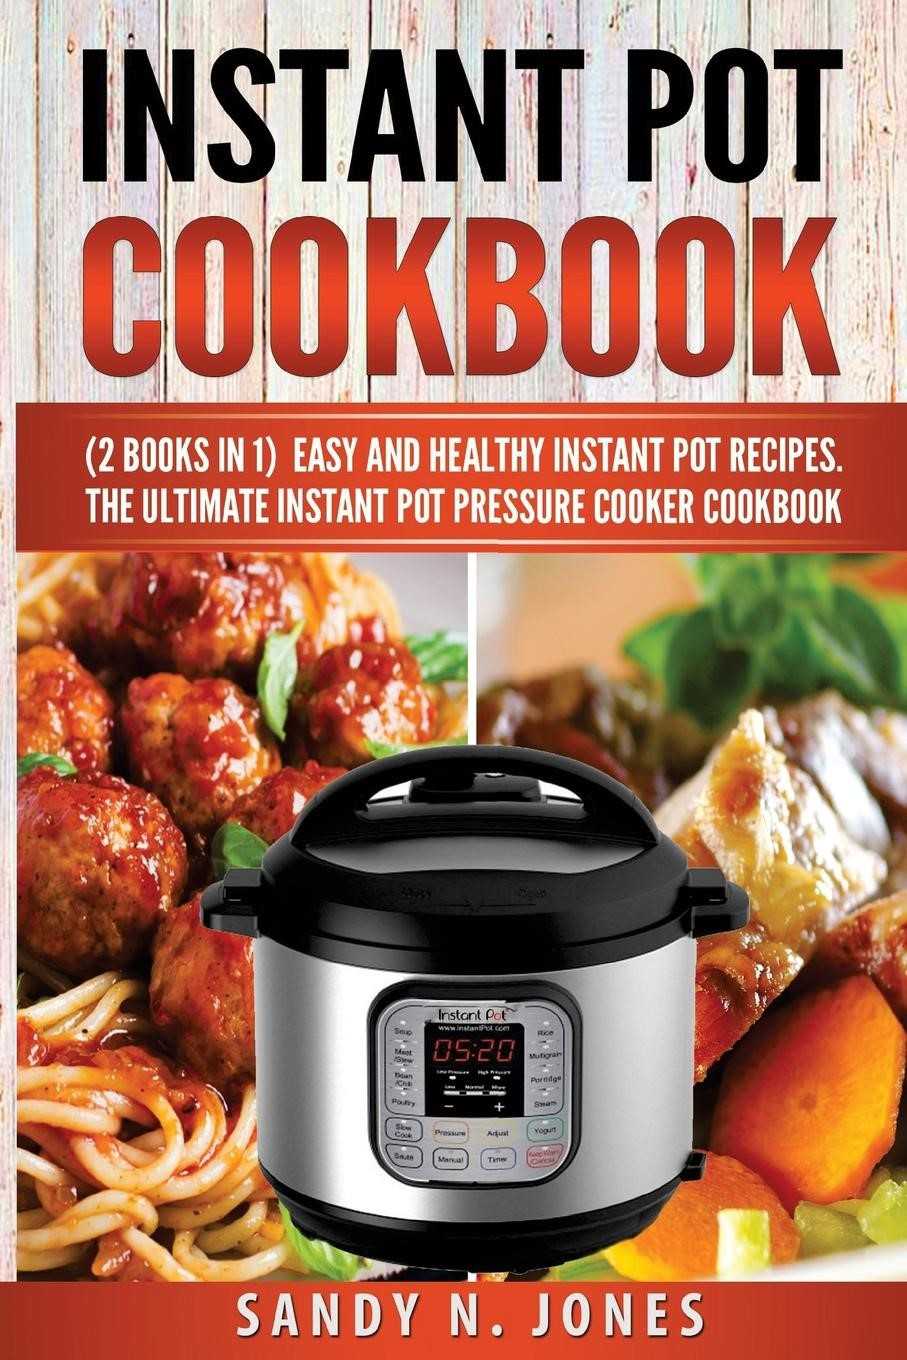 Healthy Easy Instant Pot Recipes
 Instant Pot Cookbook Easy and Healthy Instant Pot Recipes